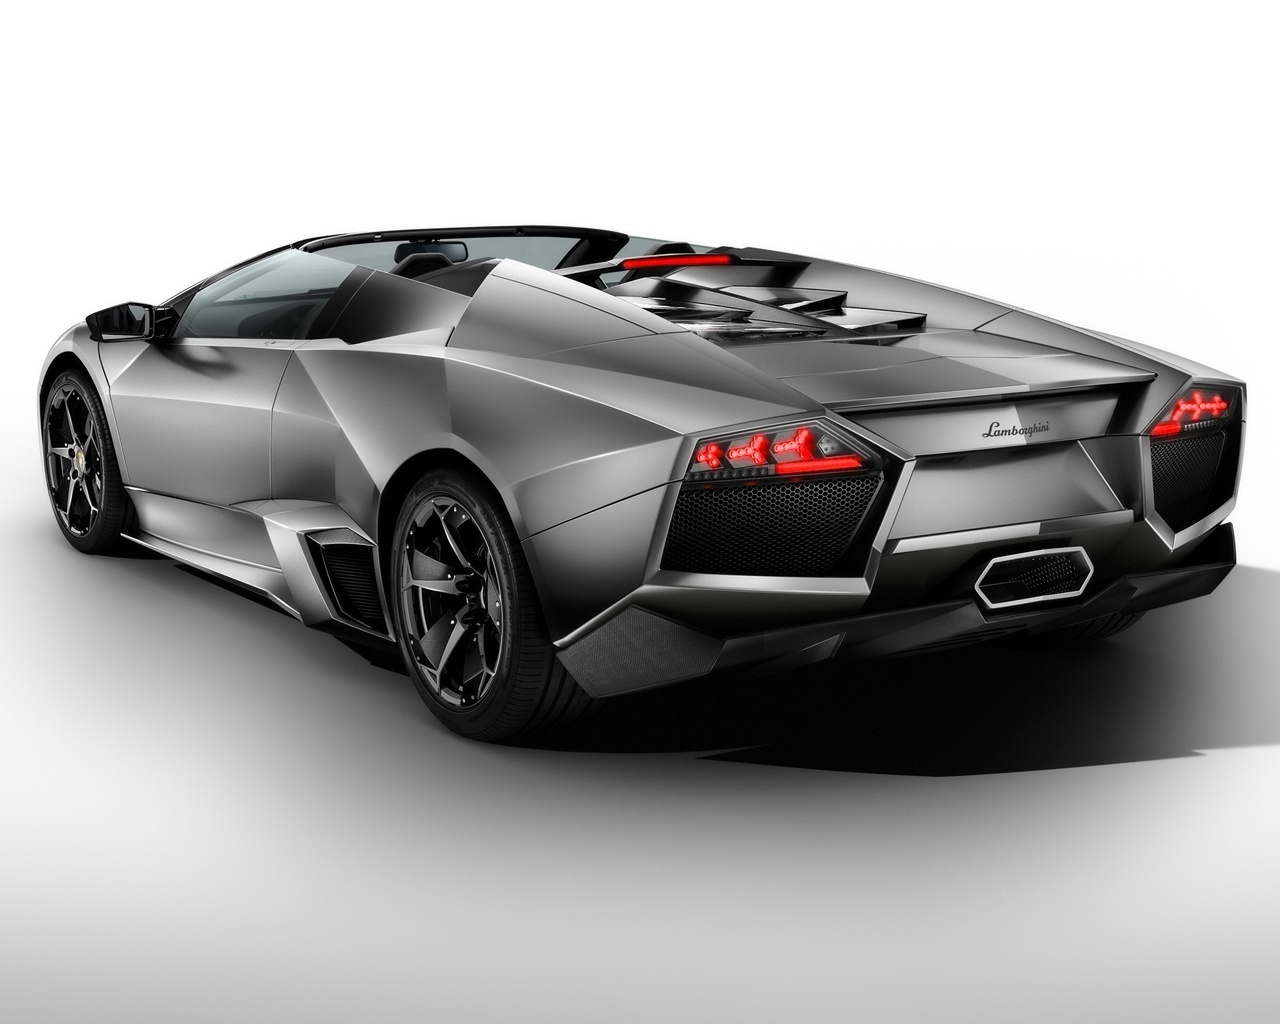 Lamborghini Reventon Roadster Rear 2010 for 1280 x 1024 resolution